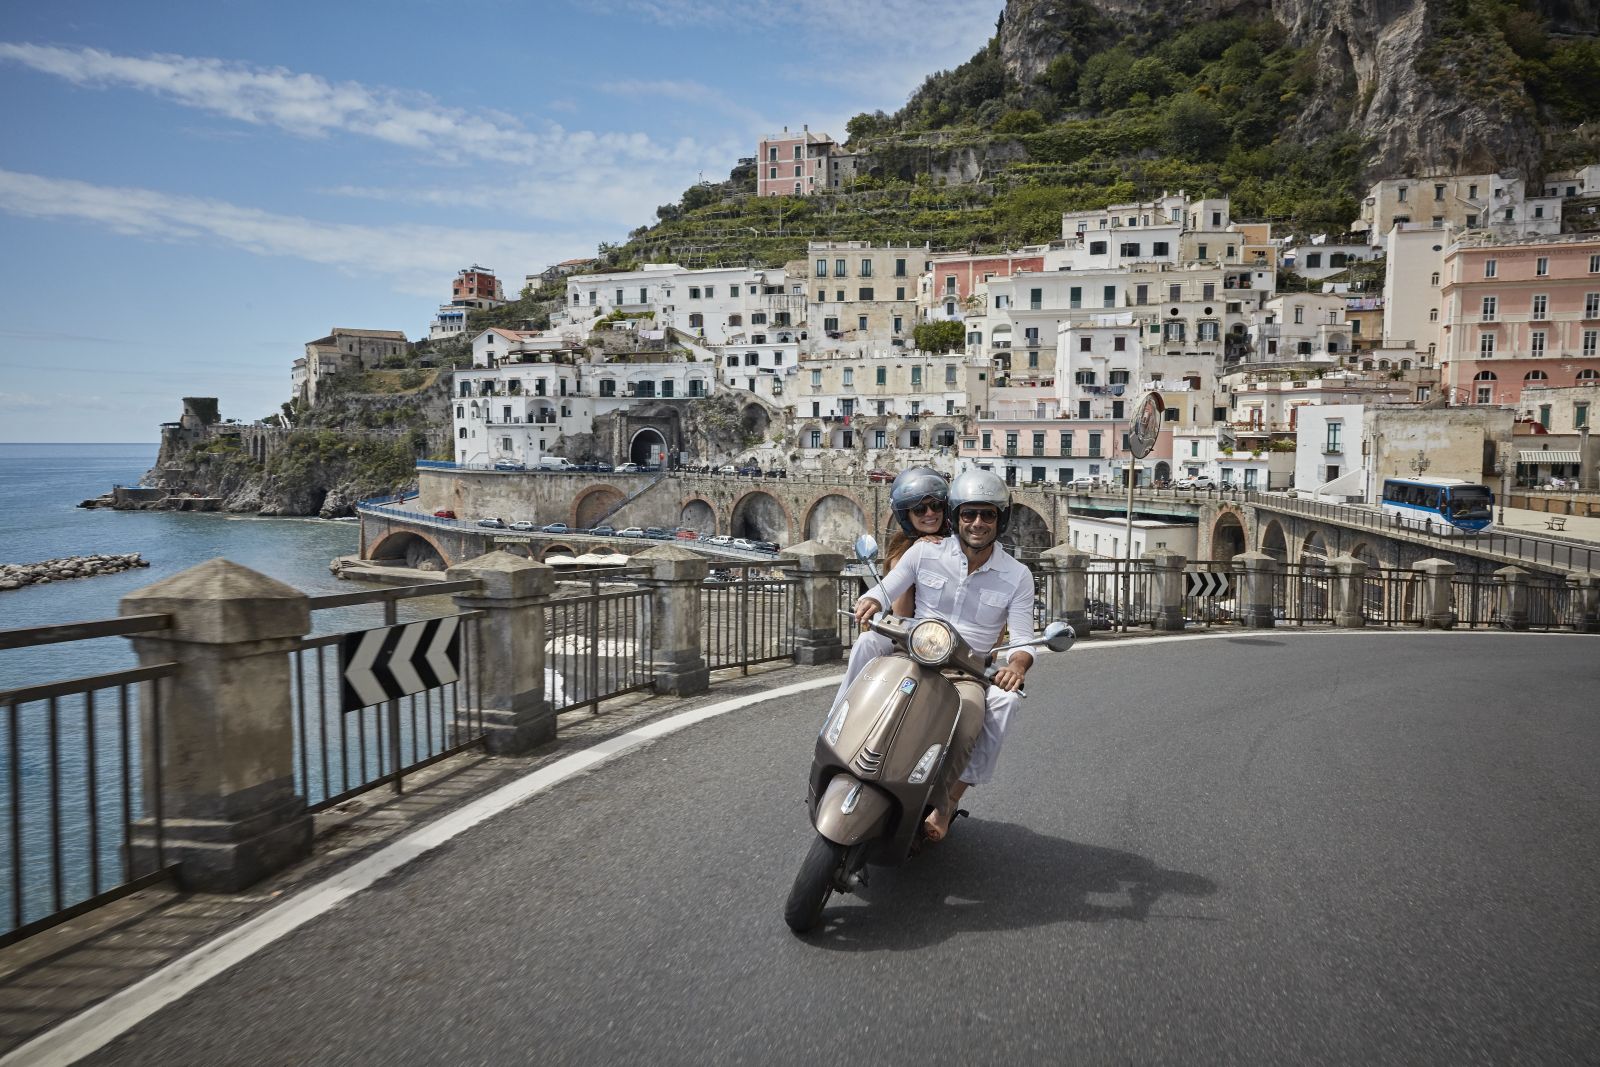 Vespa ride around the Amalfi Coast from Belmond Hotel Caruso in Ravello Italy